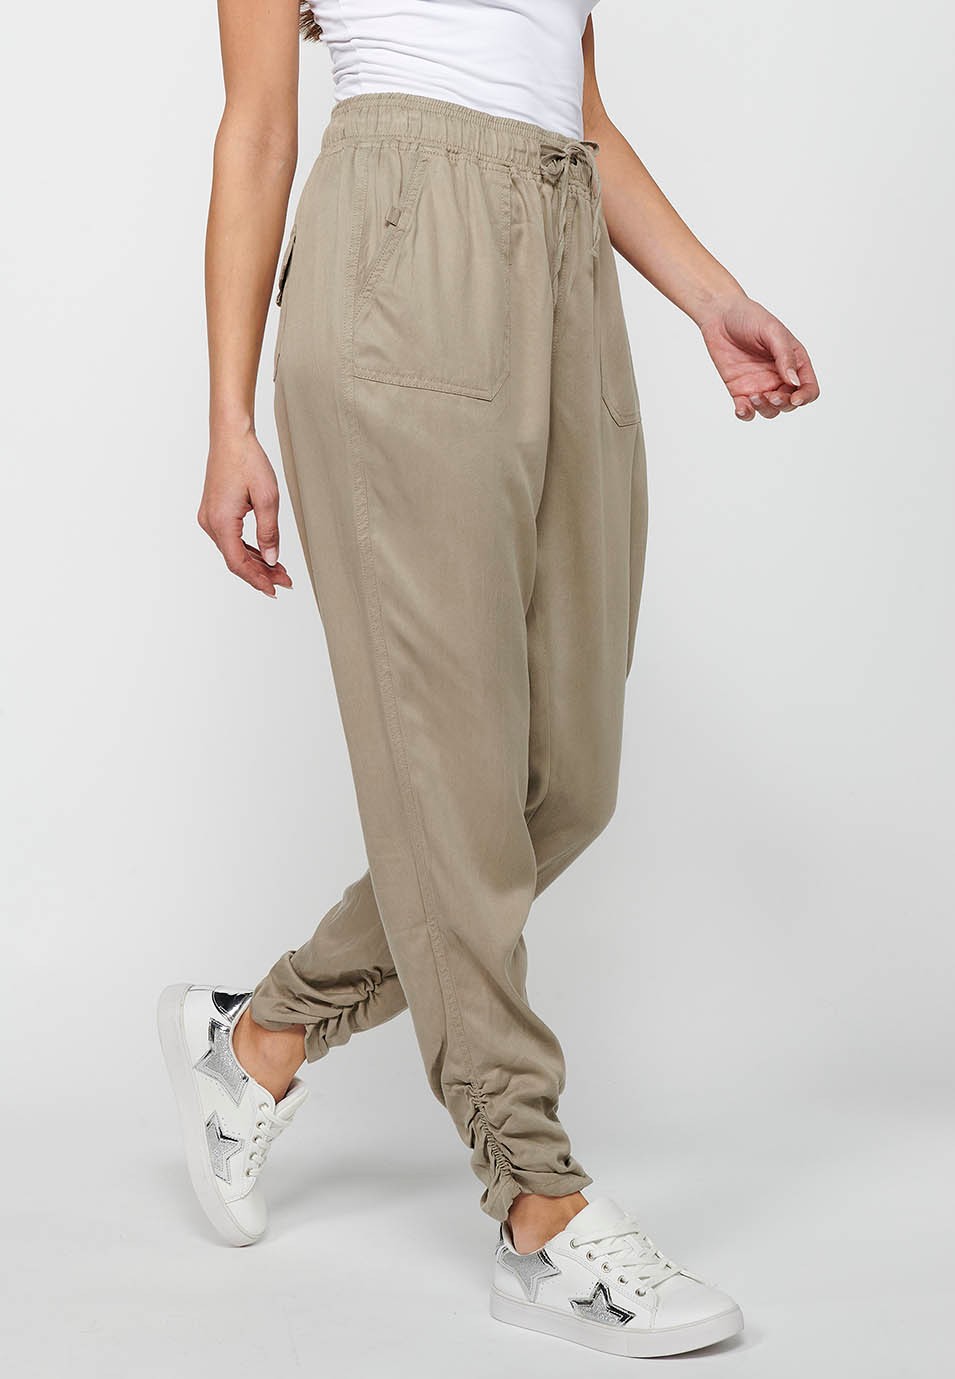 Pantalon de jogging long finition bouclée et taille caoutchoutée avec quatre poches, deux poches arrière à rabat en Gris pour Femme 3